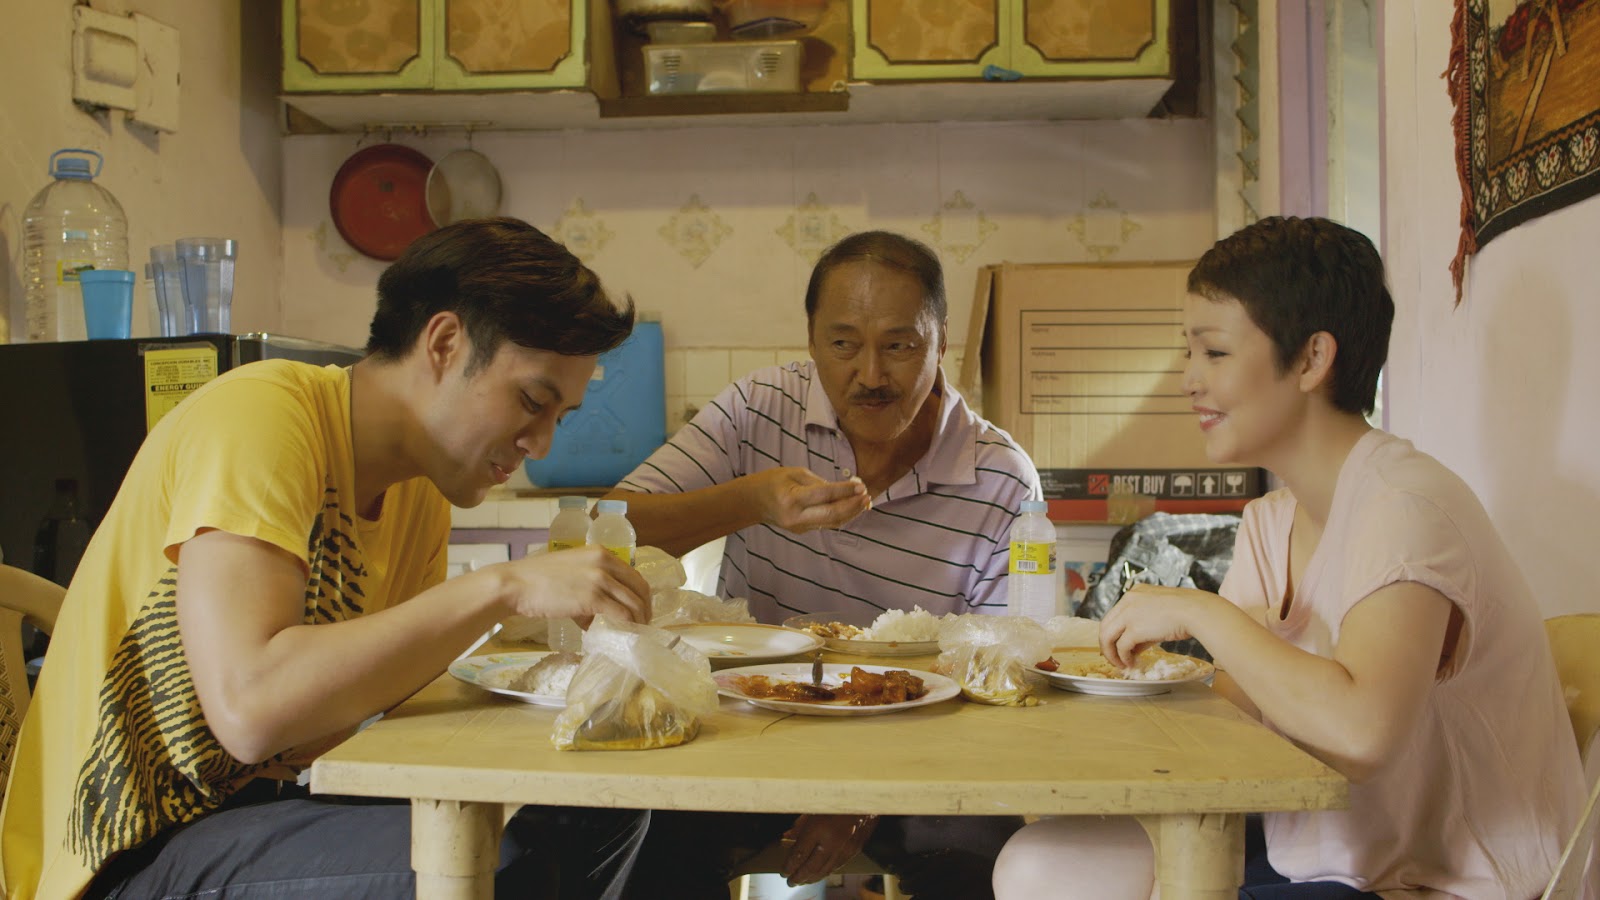 Cinemalaya 2014: “Hari ng Tondo” by Carlos Siguion-Reyna | enjoying